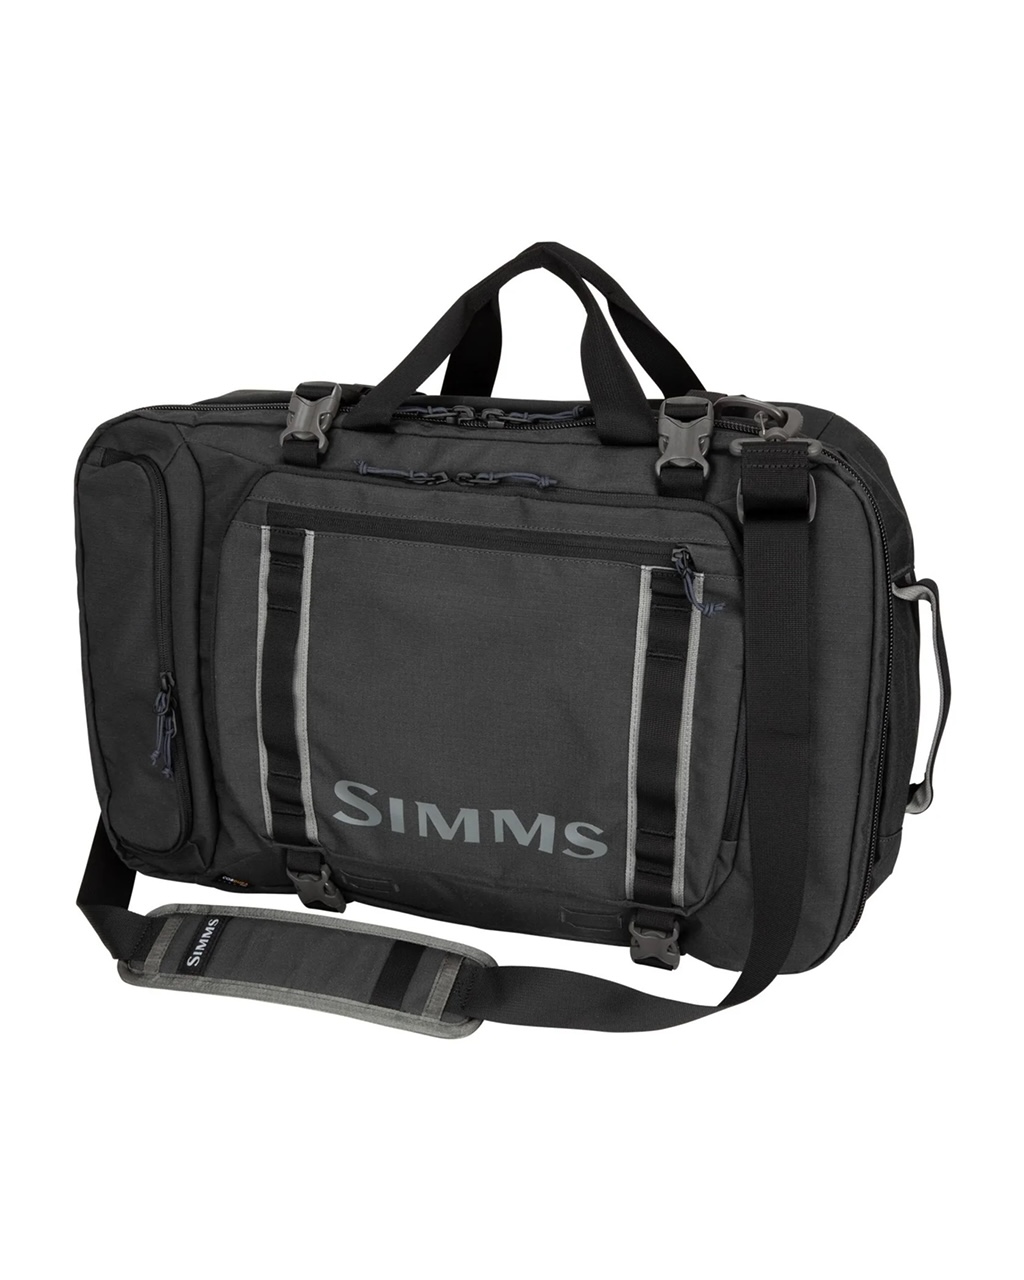 Simms GTS Tri-Carry Duffel 45L - Carbon